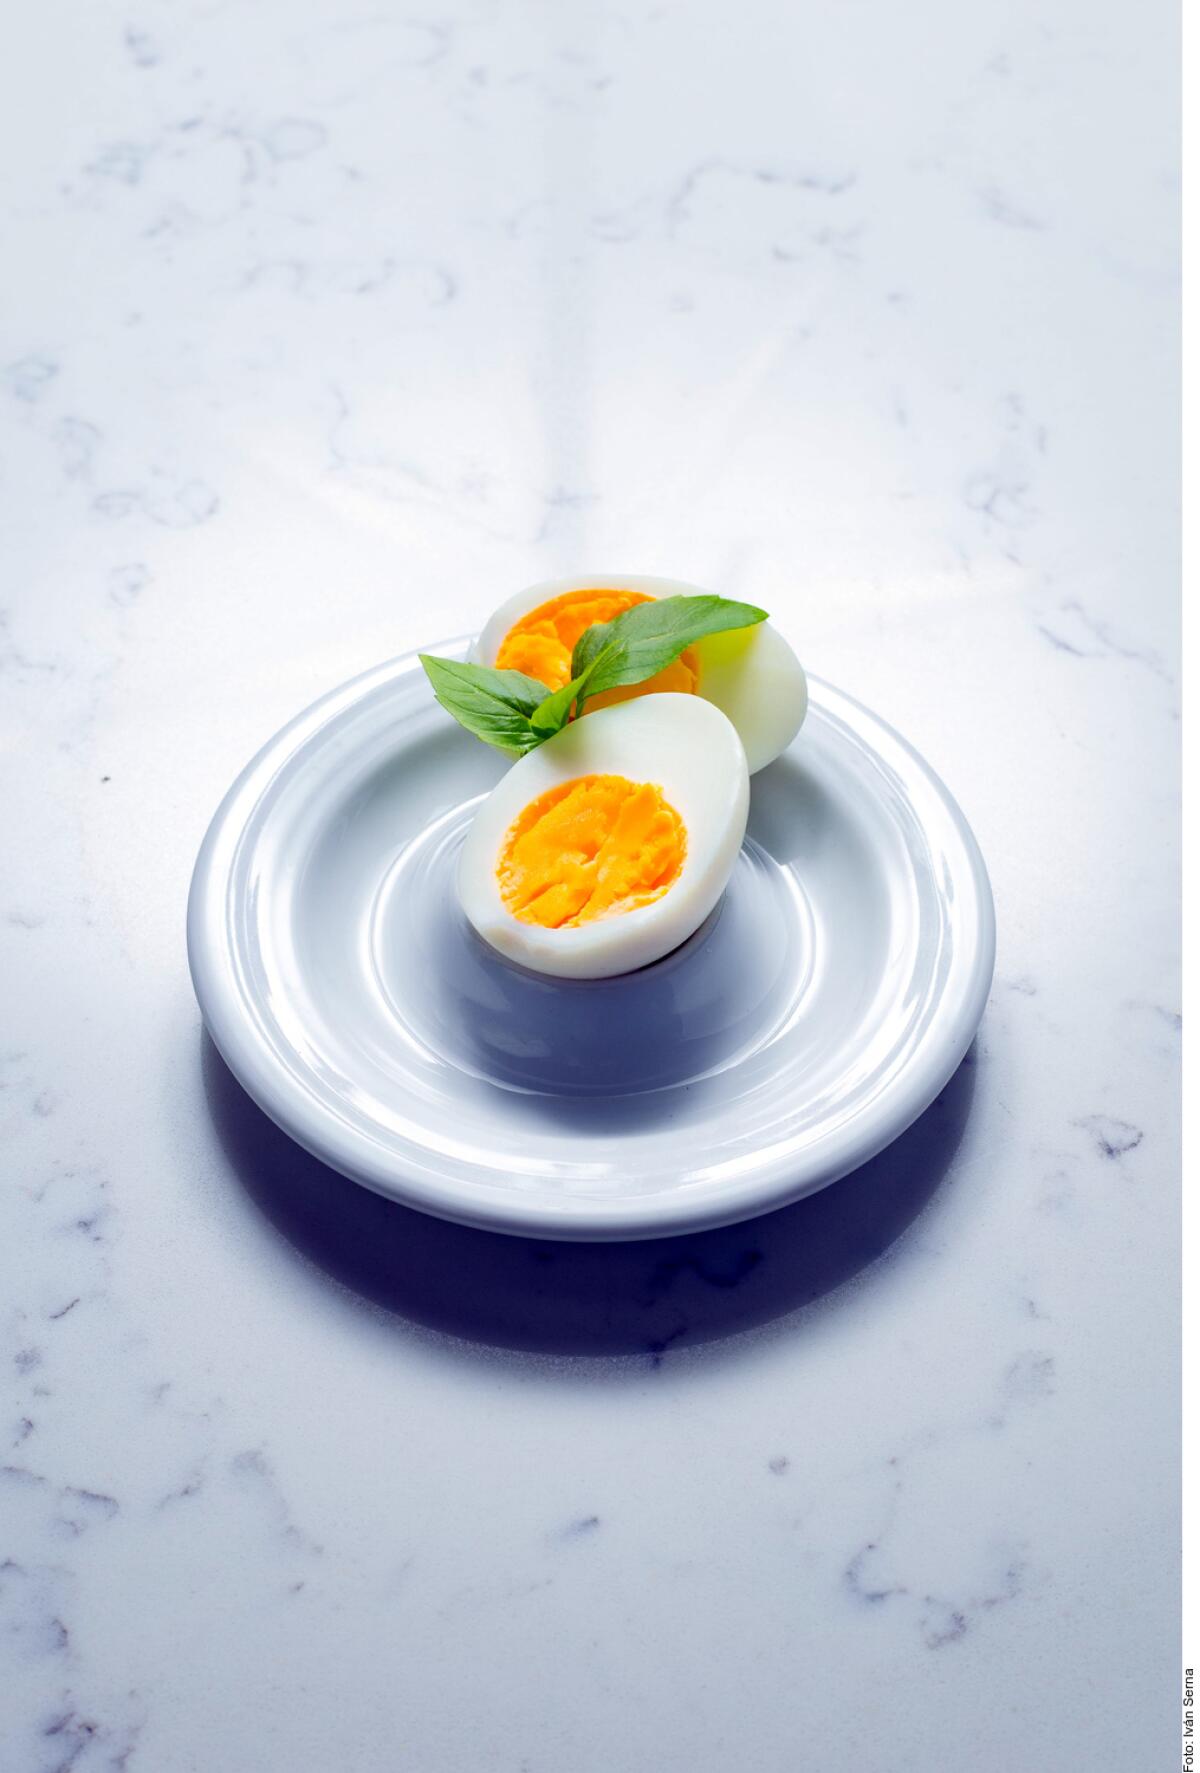 Tips para cocer huevos a la perfección - San Diego Union-Tribune en Español